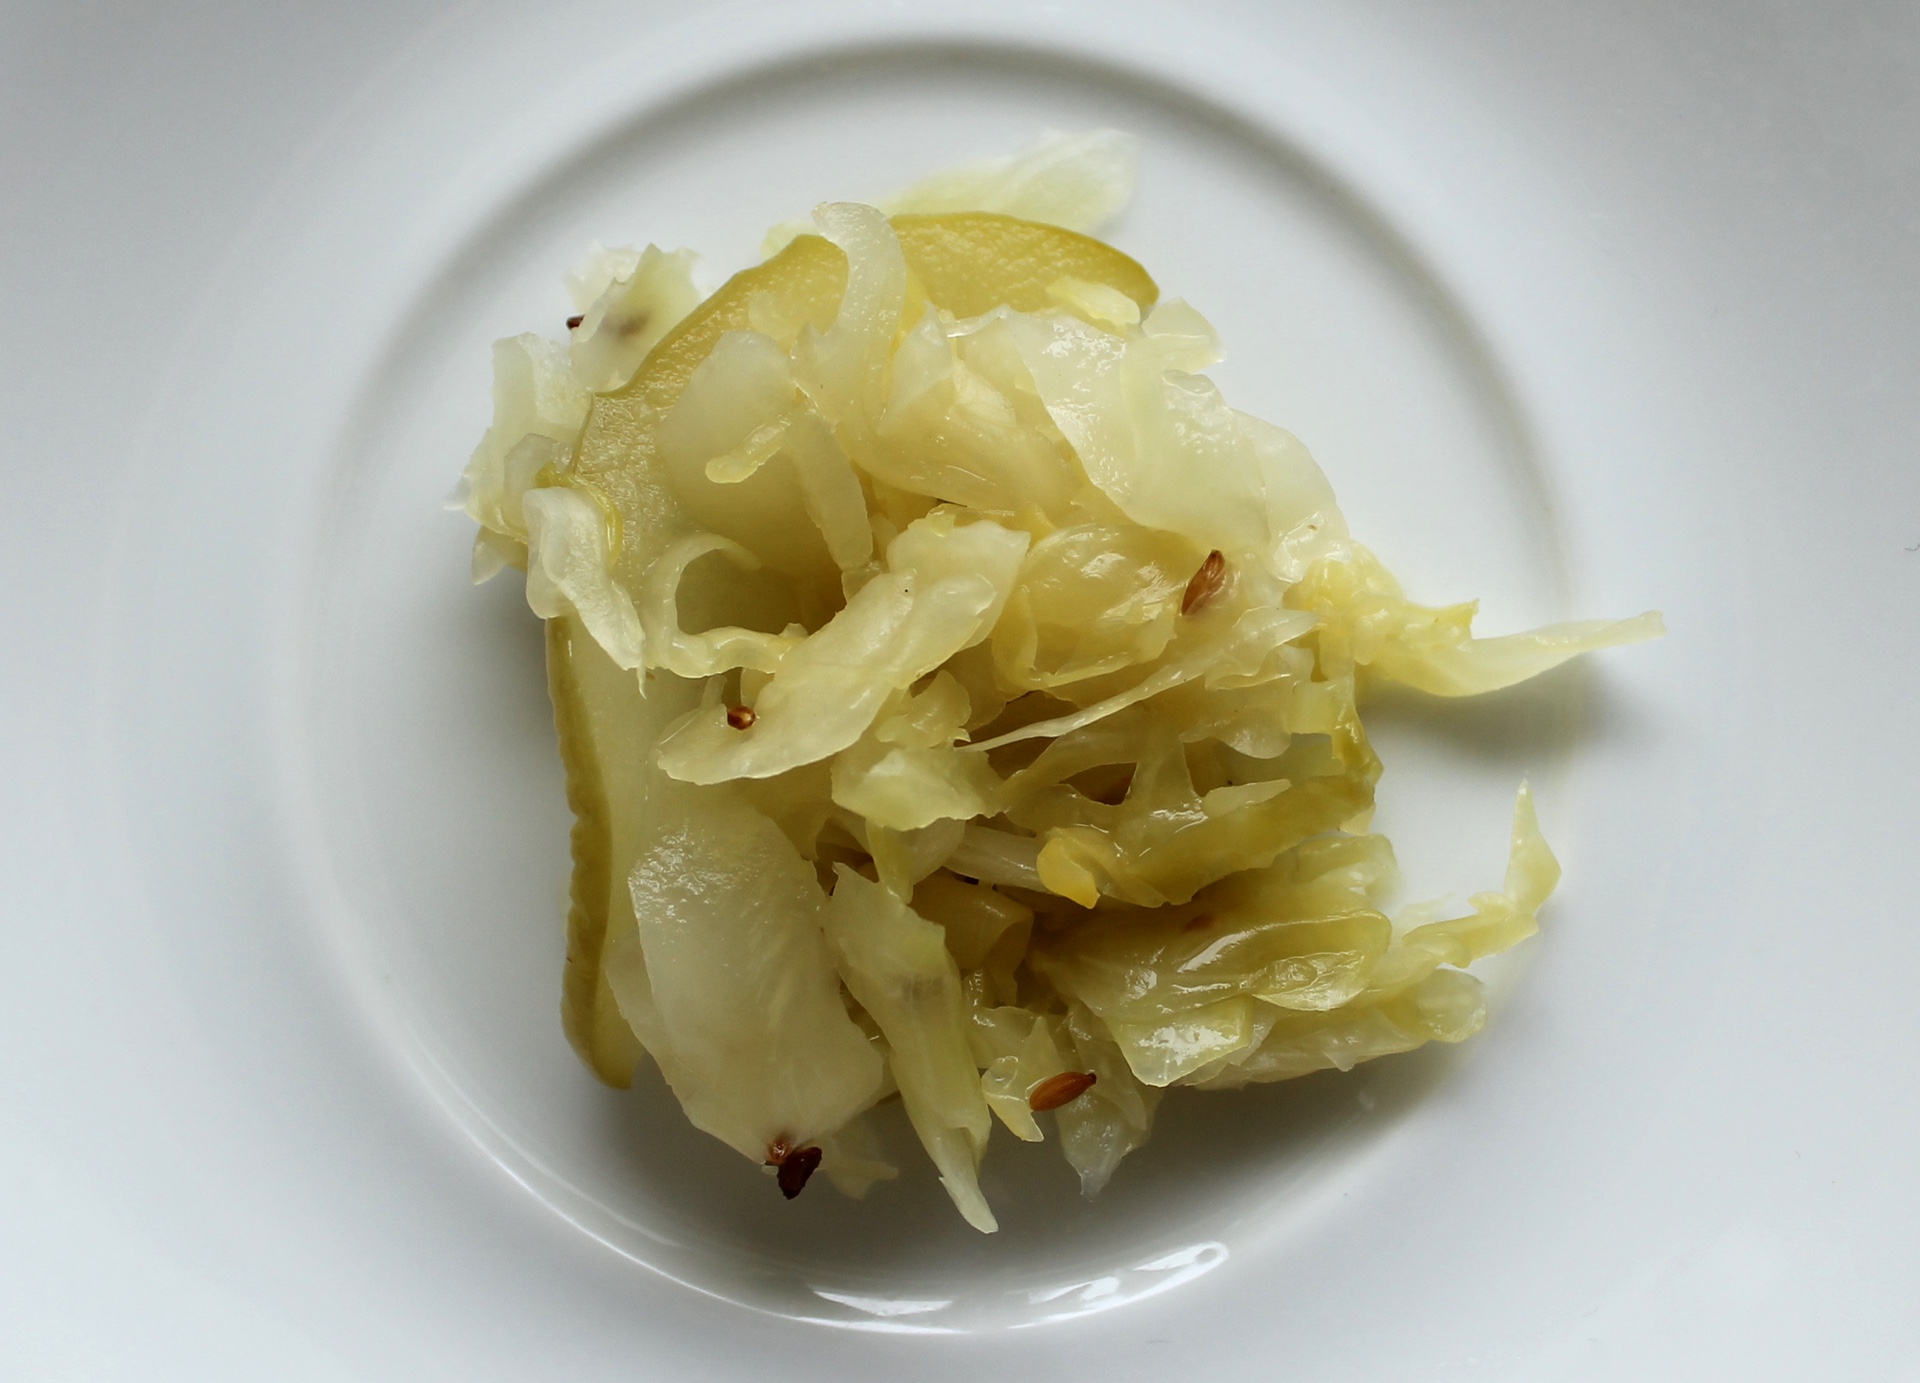 Cultured’s sauerkraut includes slices of green apple, caraway seeds, and juniper berries.